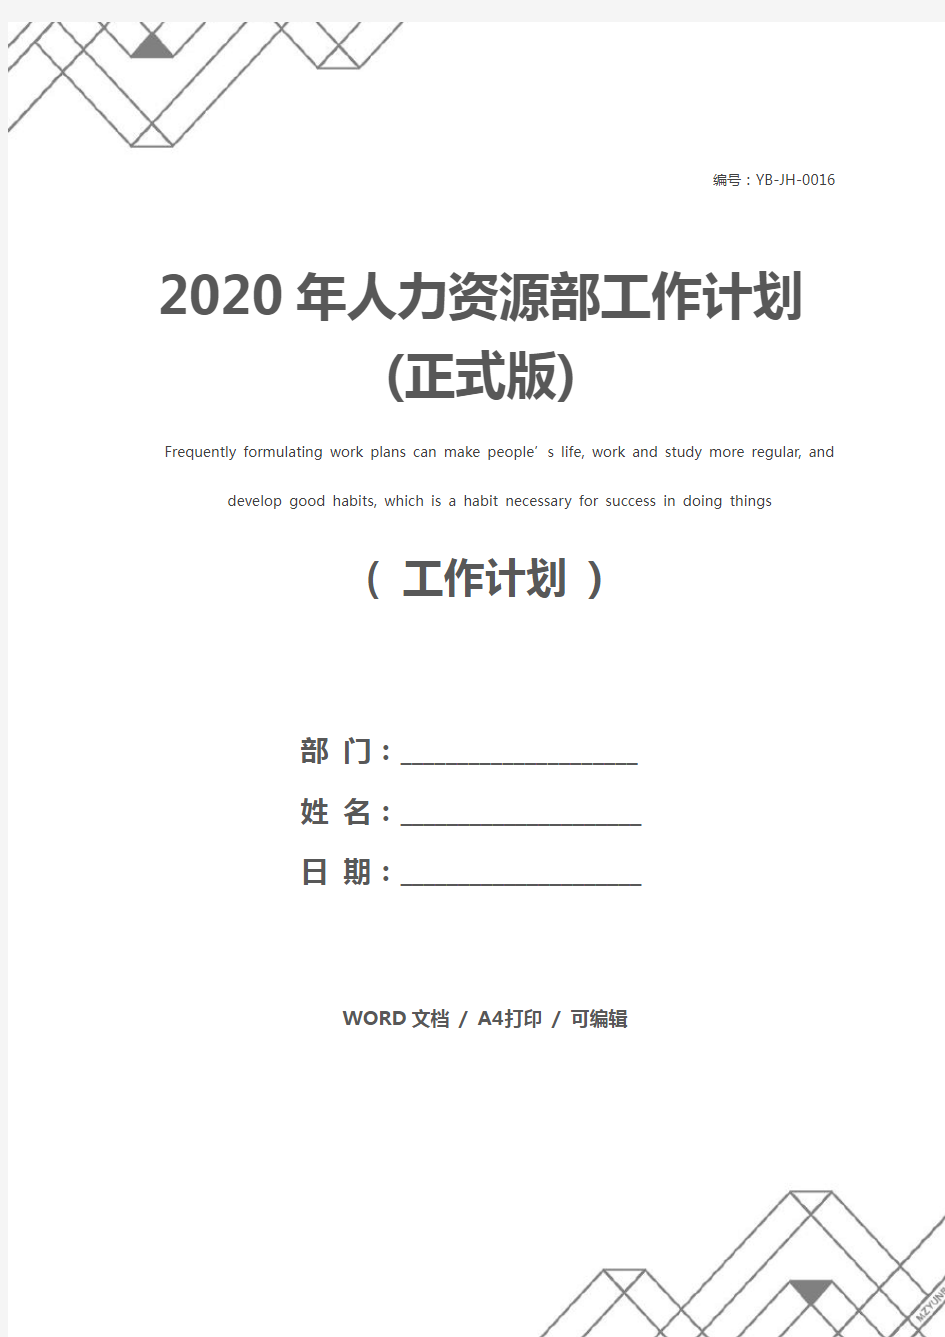 2020年人力资源部工作计划(正式版)